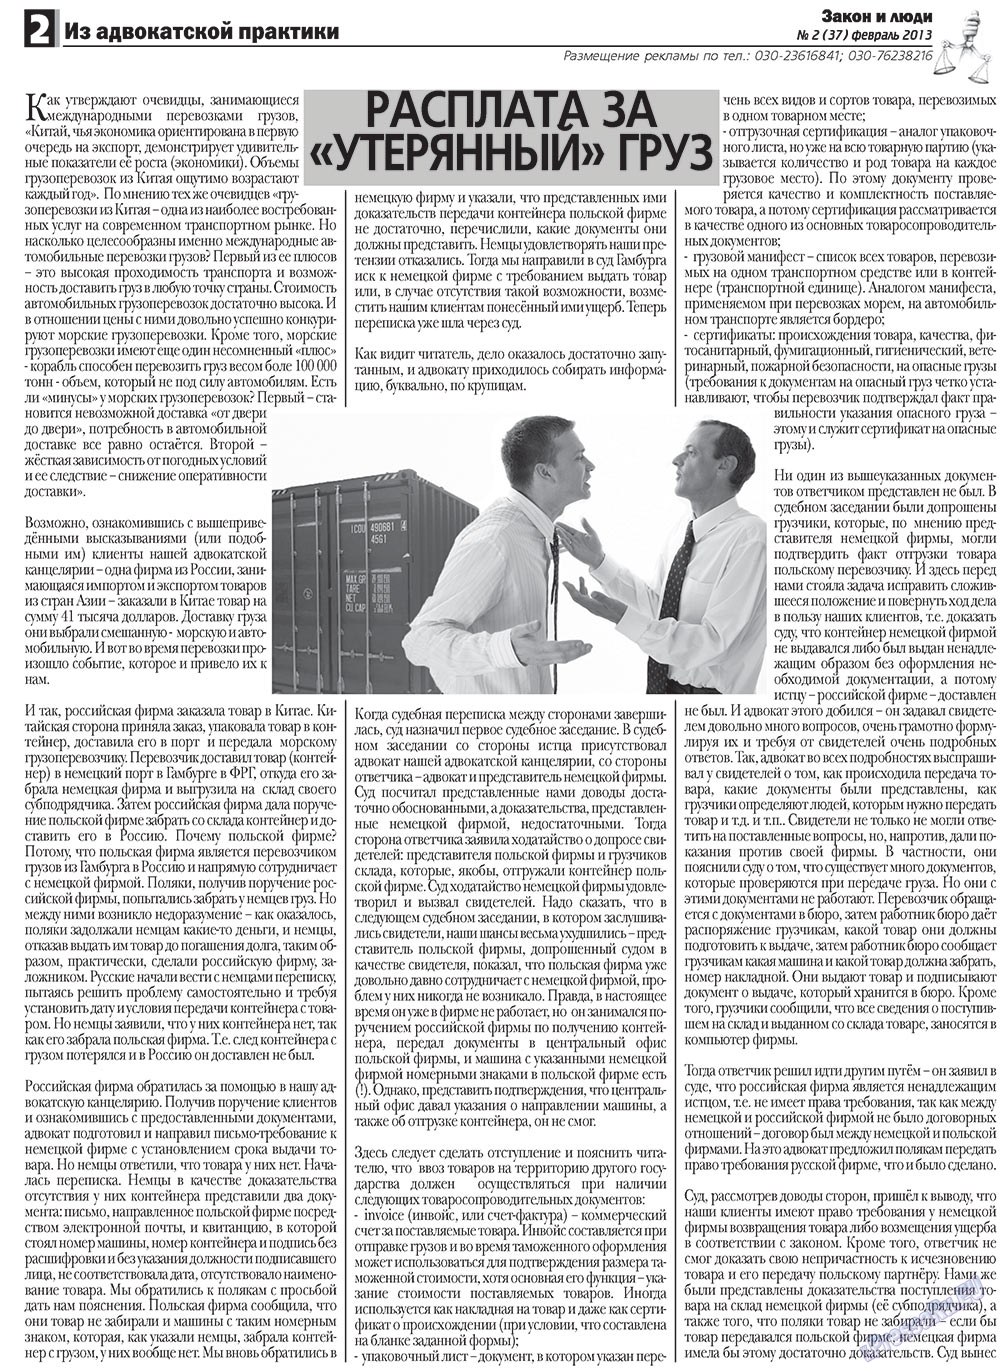 Закон и люди (газета). 2013 год, номер 2, стр. 2